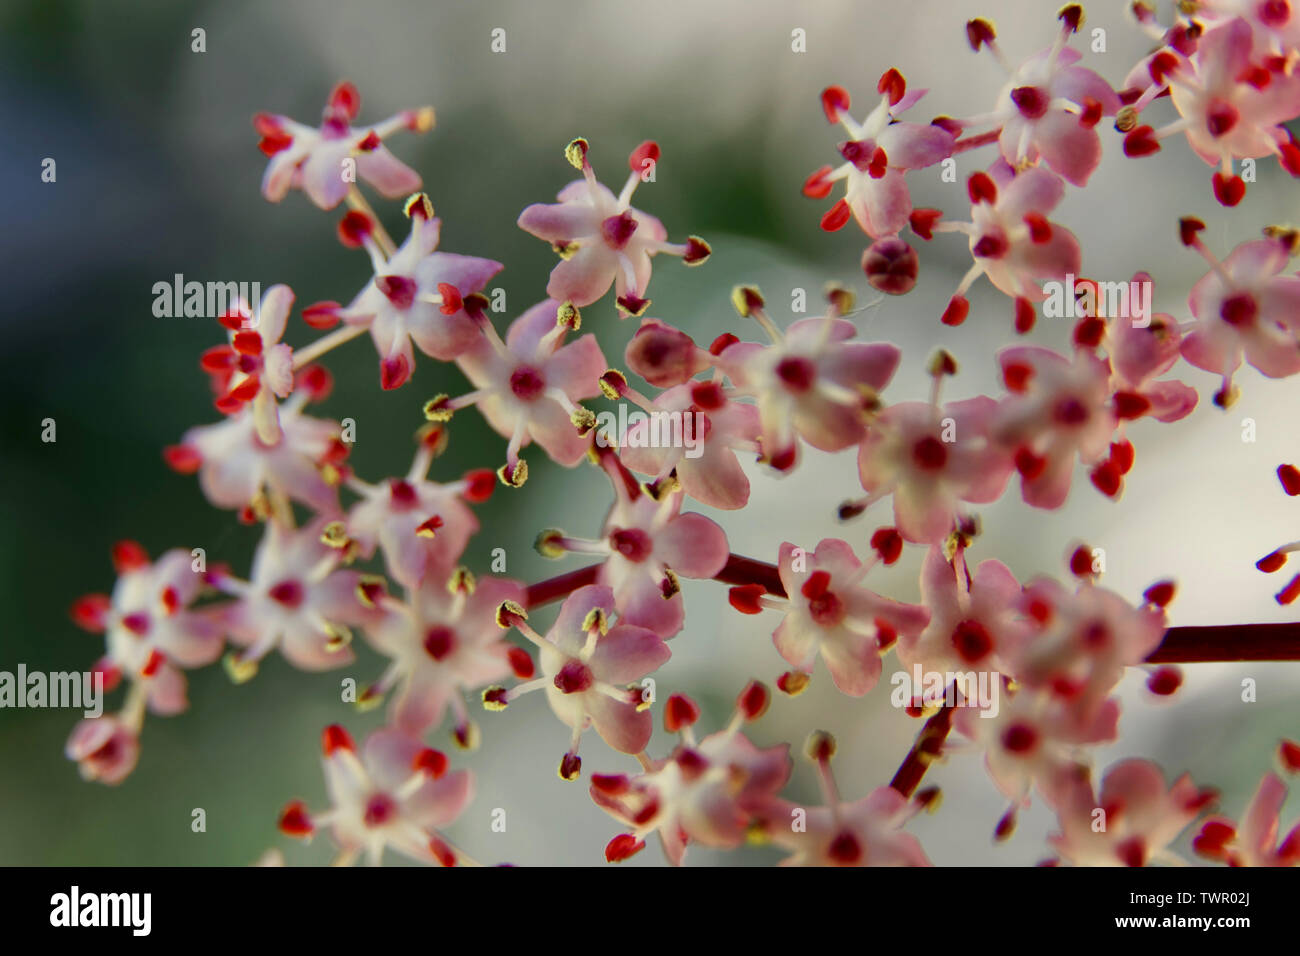 Elderflower blossom Stock Photo